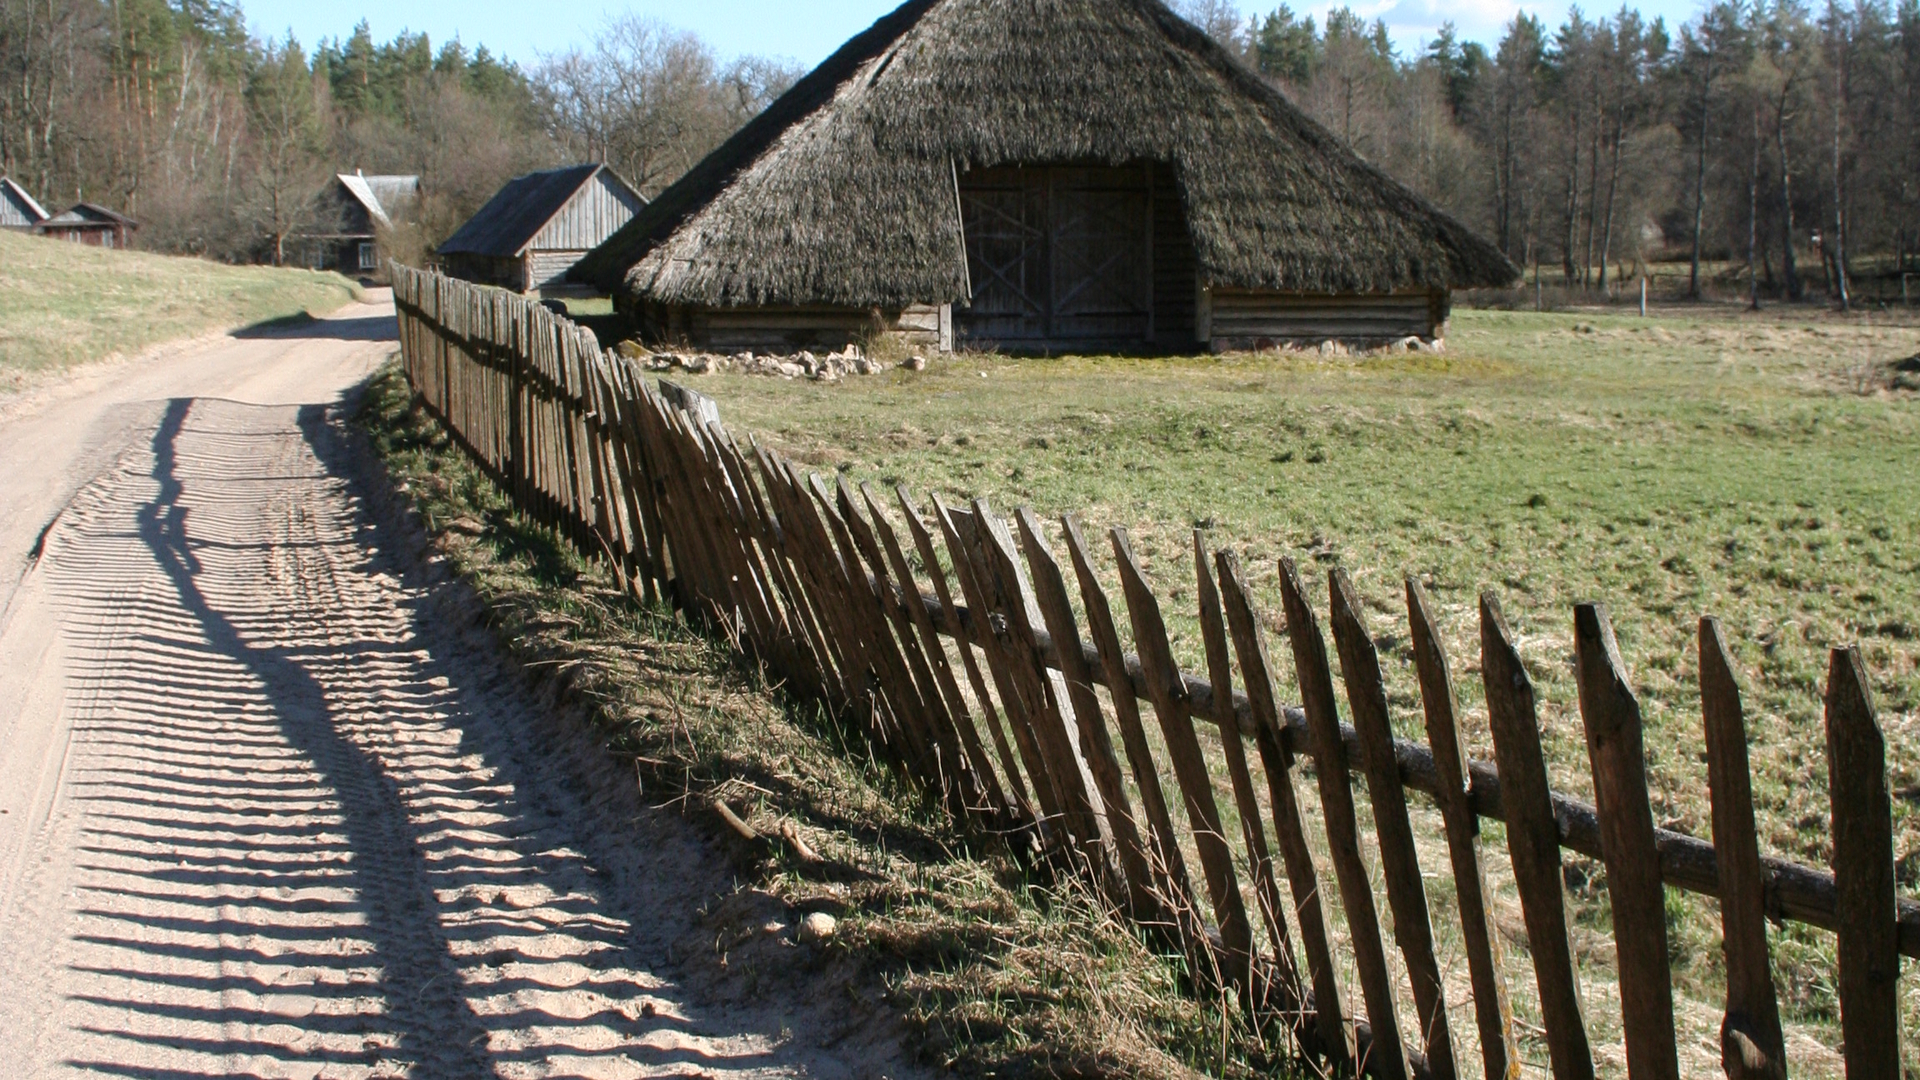 Ethnographic villages: Vaišnoriškė